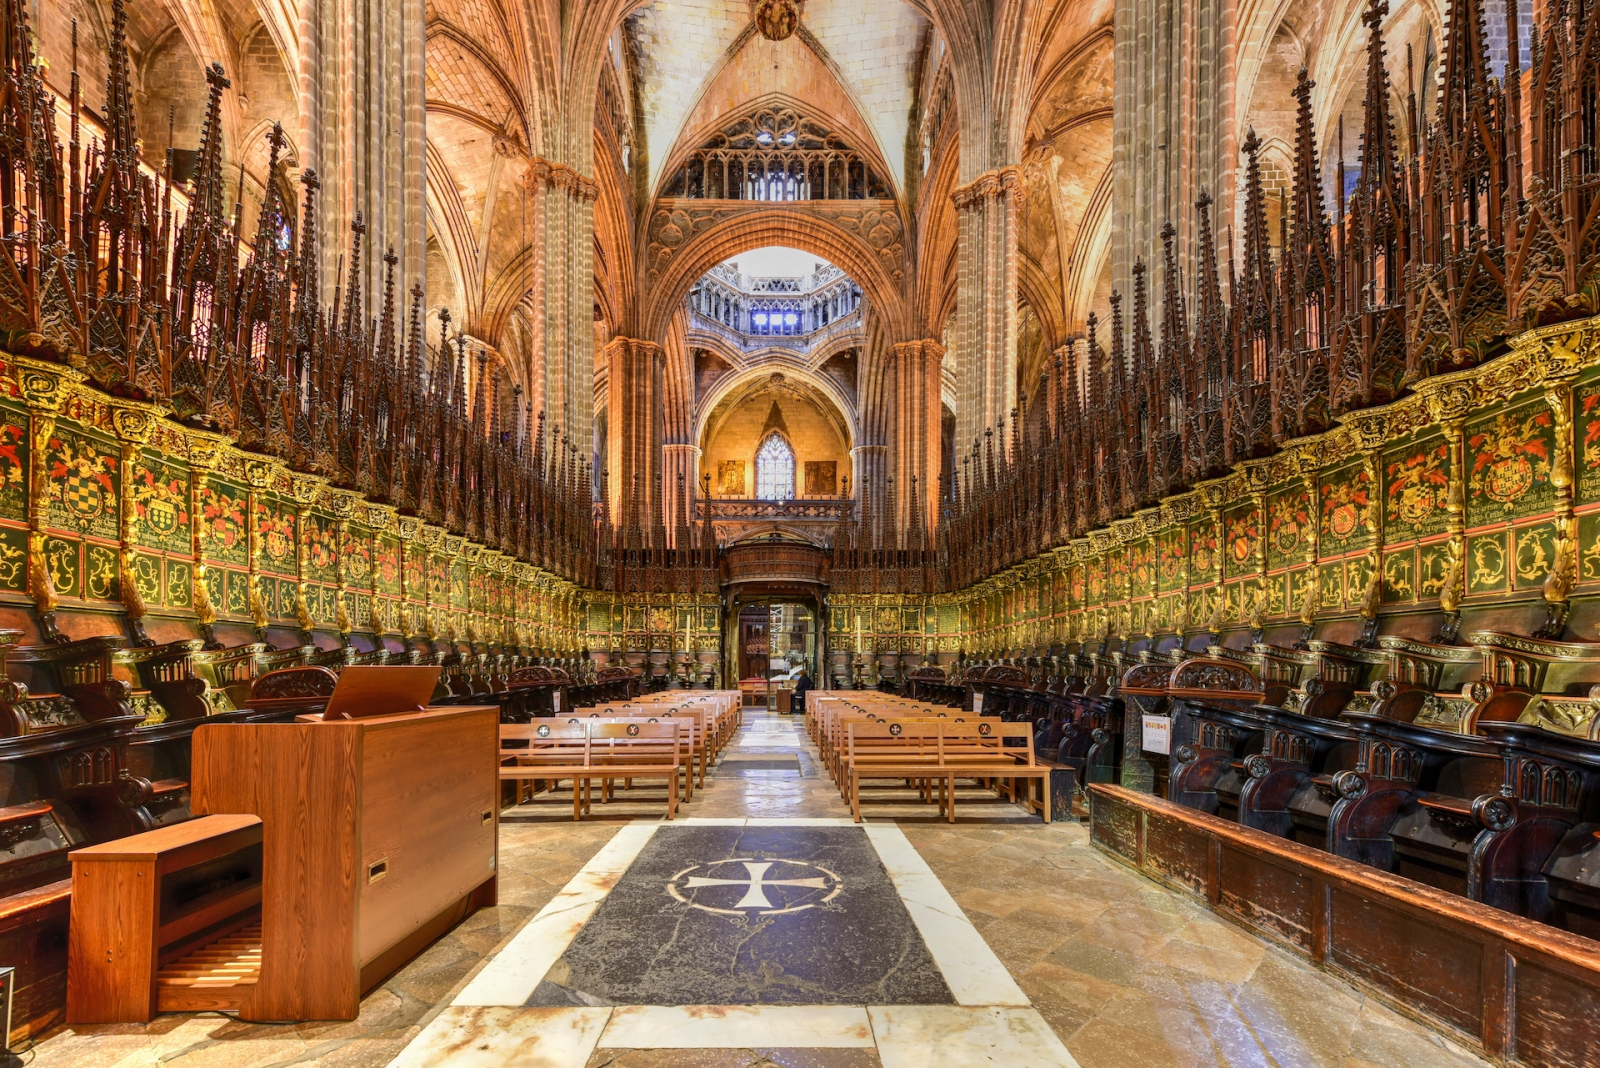 Kathedrale von Barcelona